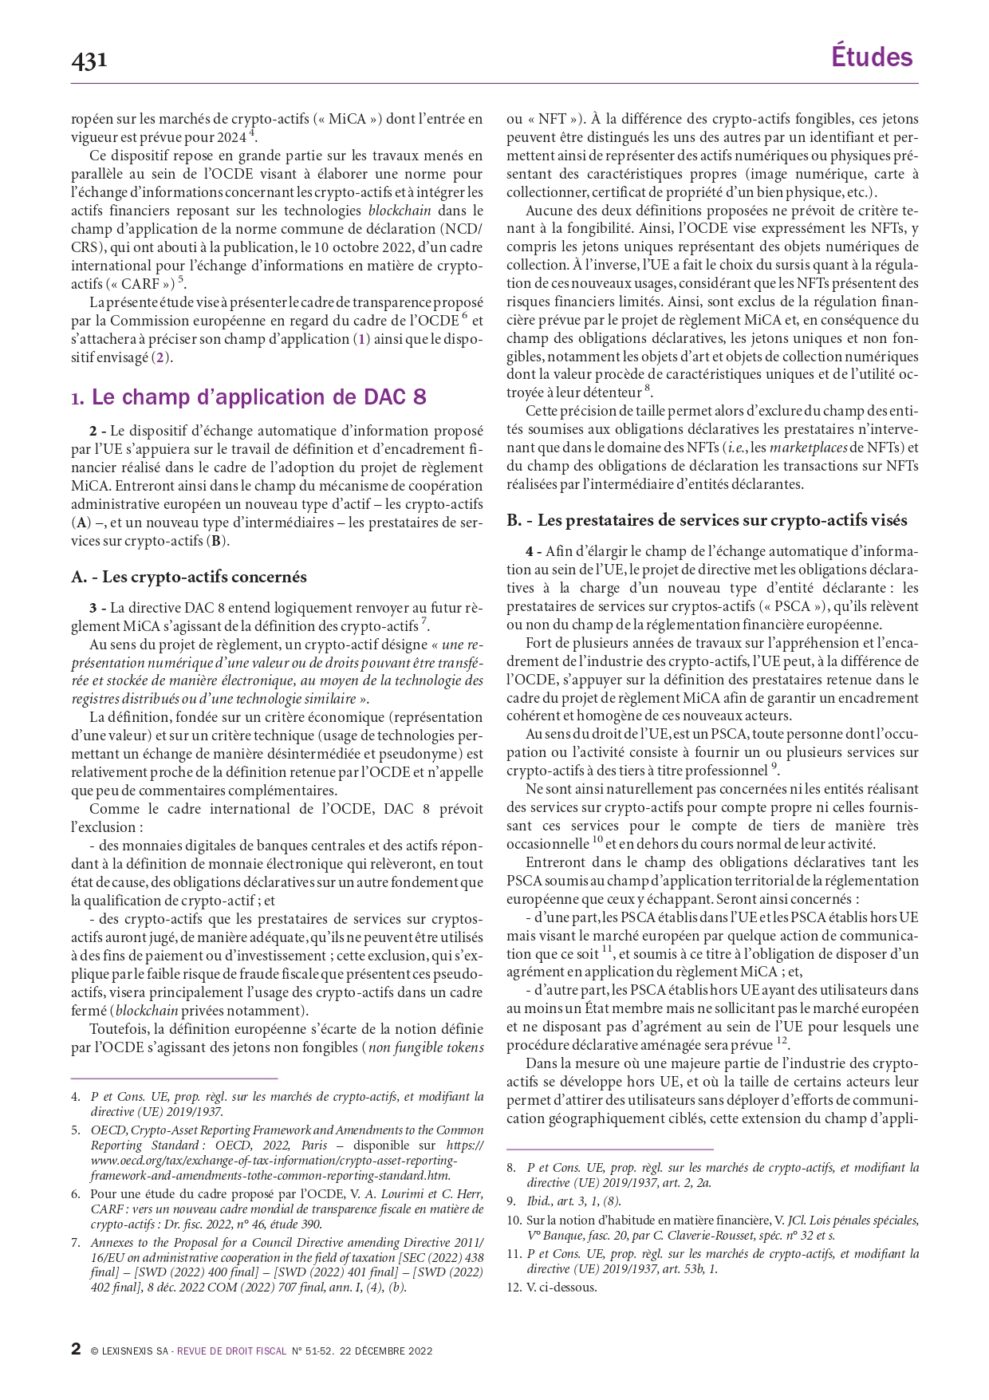 DAC 8 : vers un nouveau cadre européen de transparence fiscale en matière de crypto-actifs 2/2